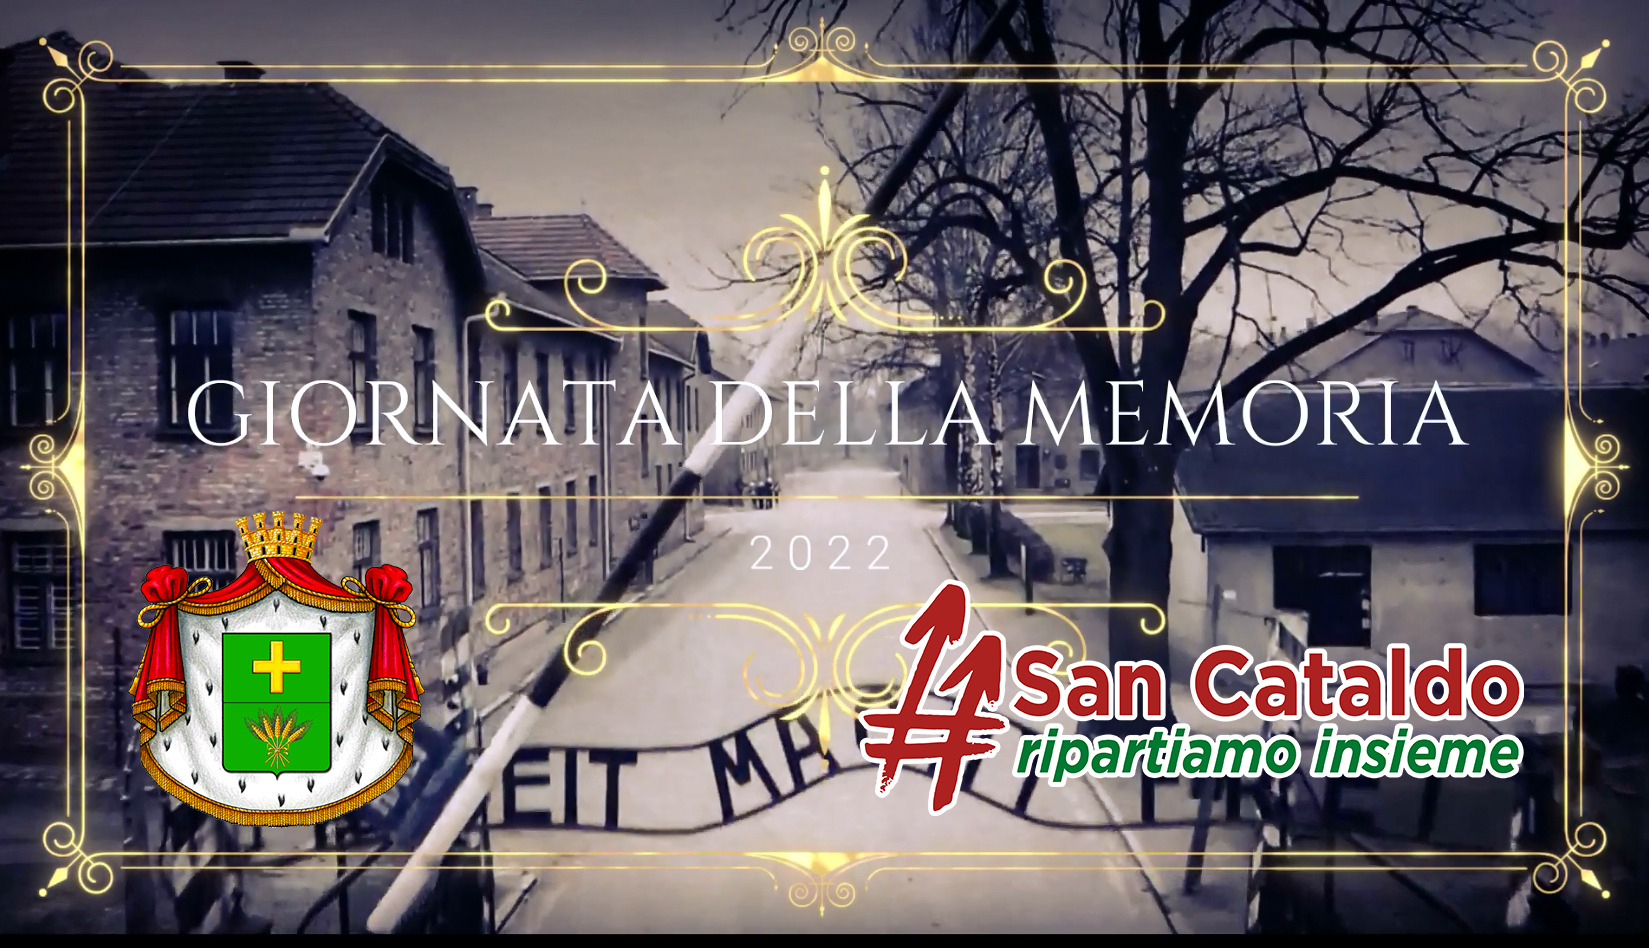 Video commemorativo realizzato dal Comune di San Cataldo in collaborazione con il gruppo “San Cataldo ripartiamo insieme”